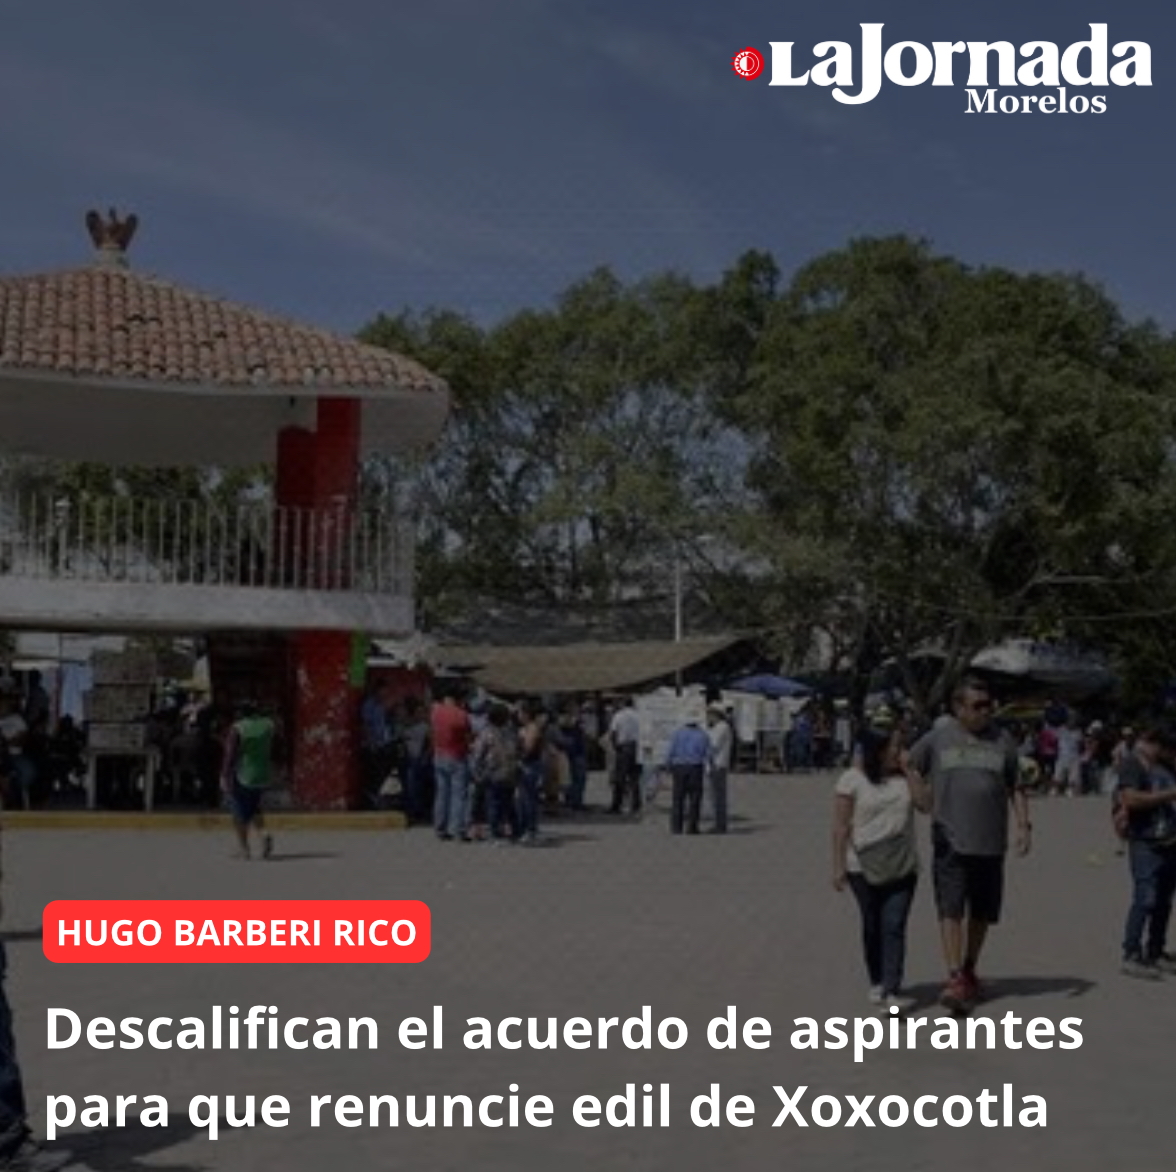 Descalifican el acuerdo de aspirantes para que renuncie edil de Xoxocotla